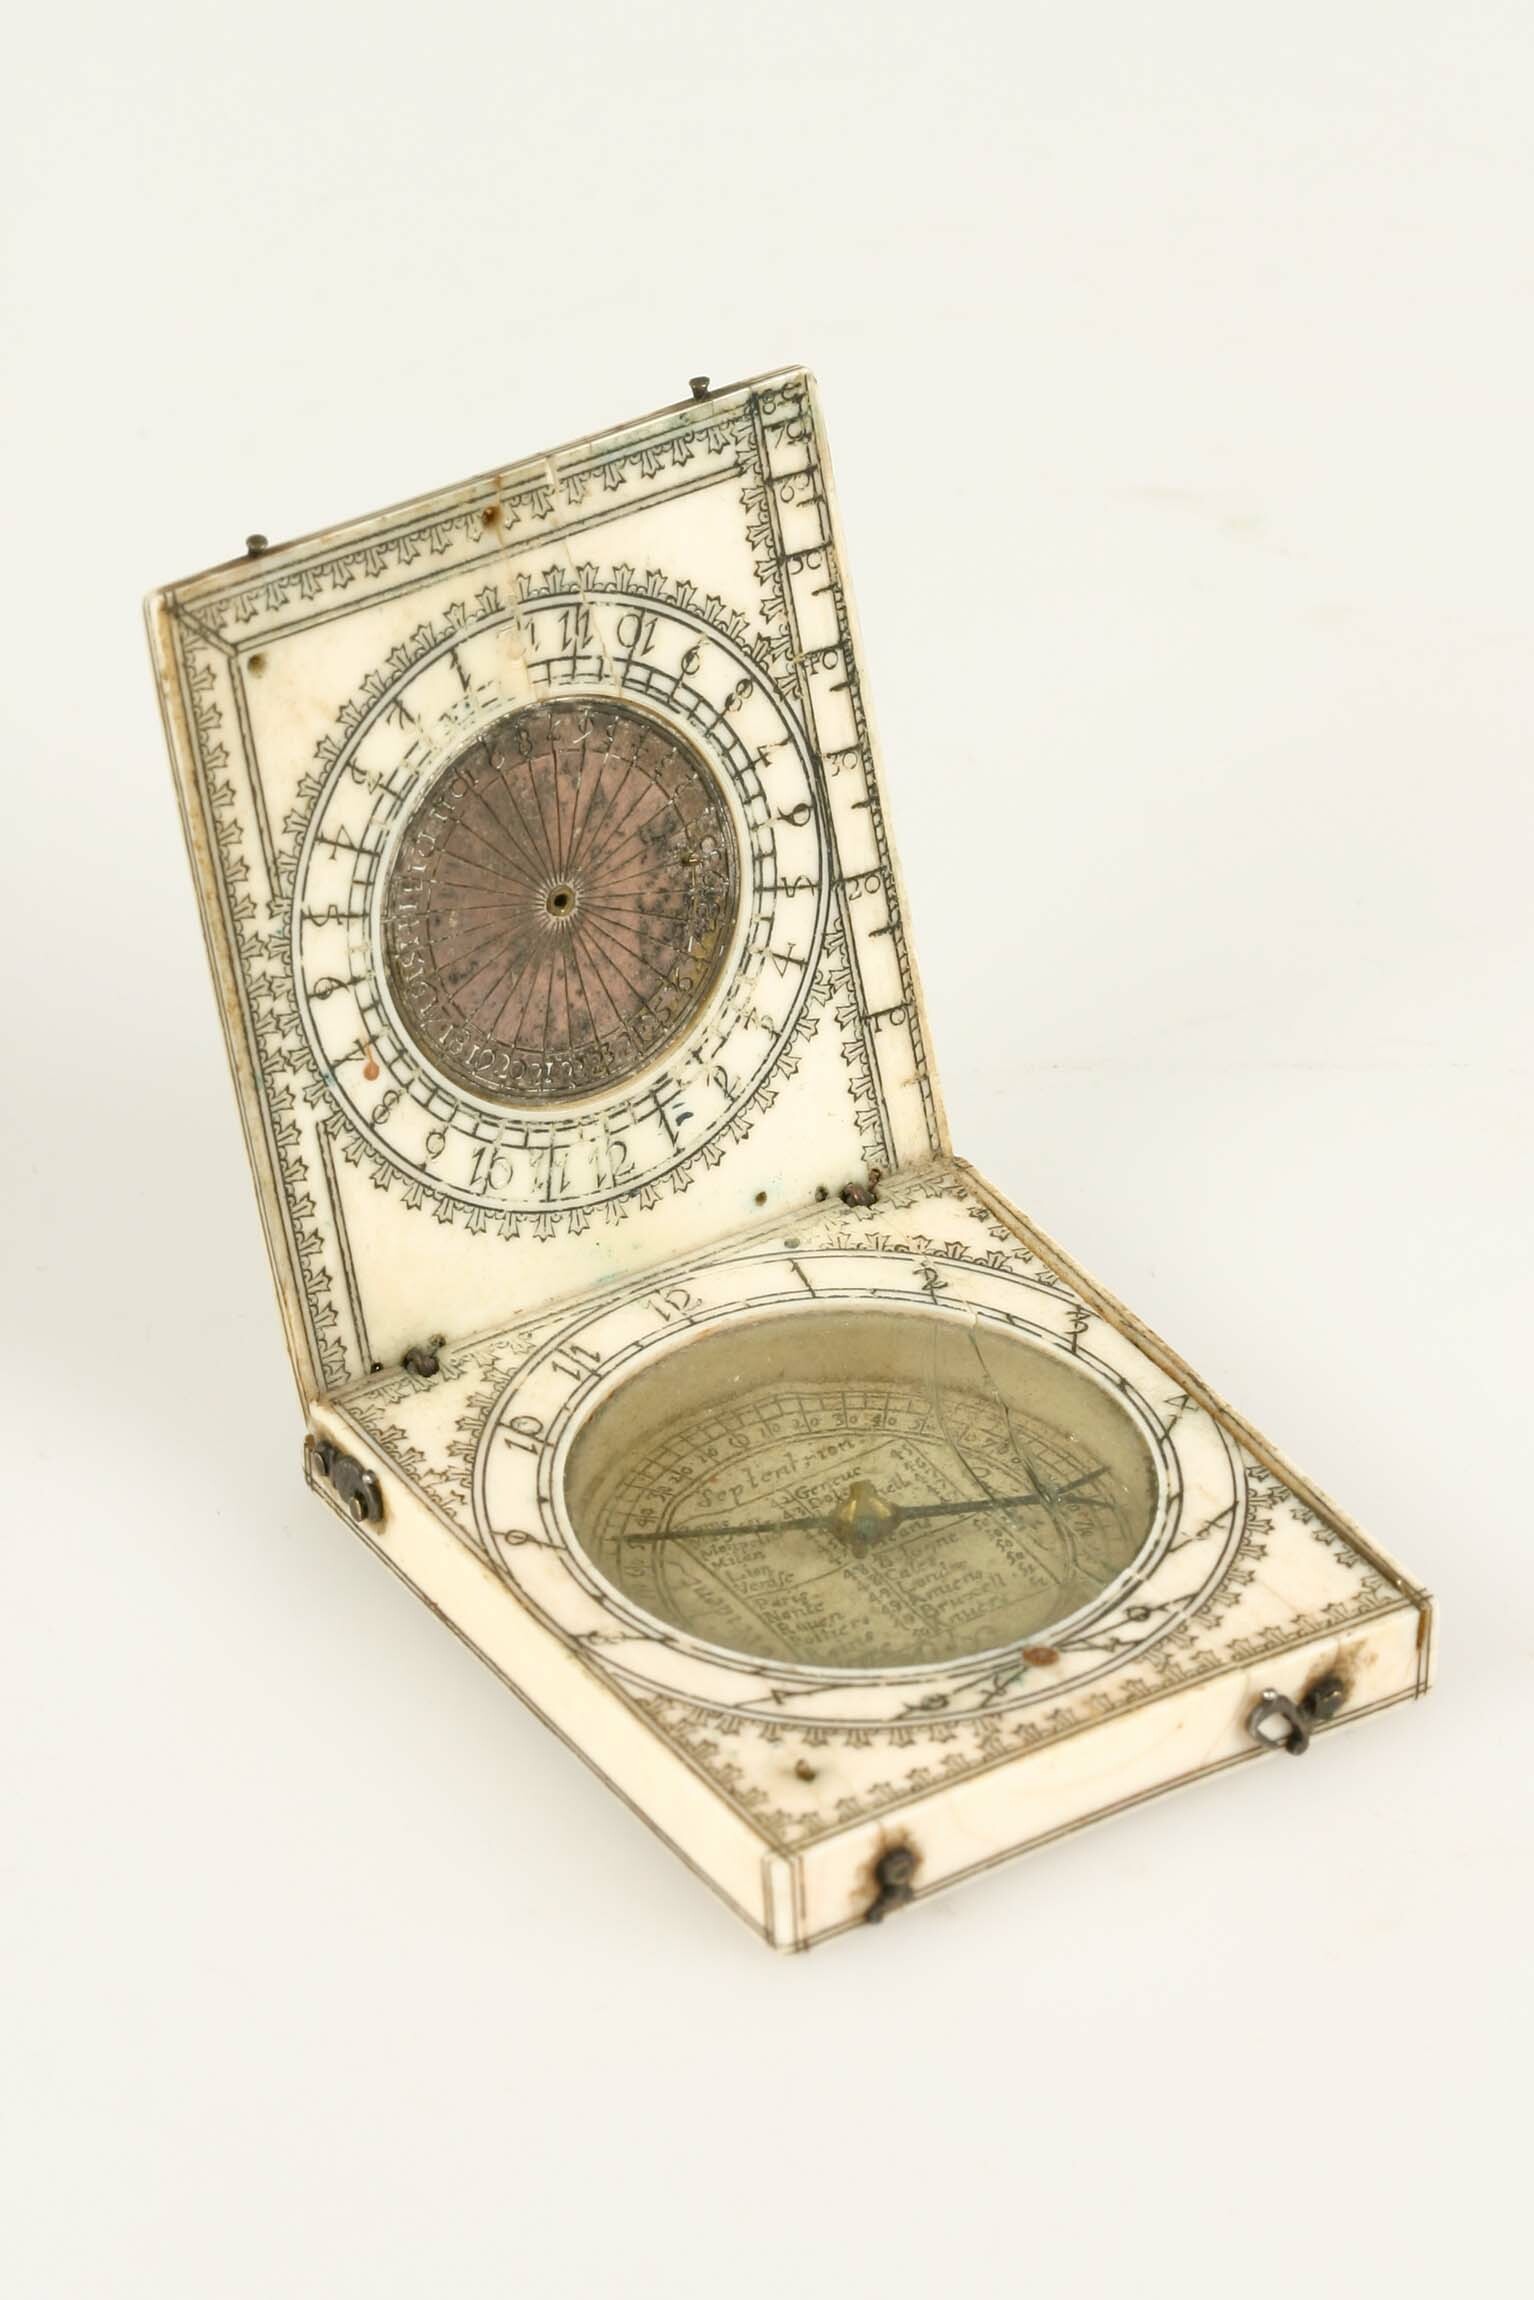 Klappsonnenuhr, Typ Dieppe, 2. Hälfte 17. Jahrhundert (Deutsches Uhrenmuseum CC BY-SA)